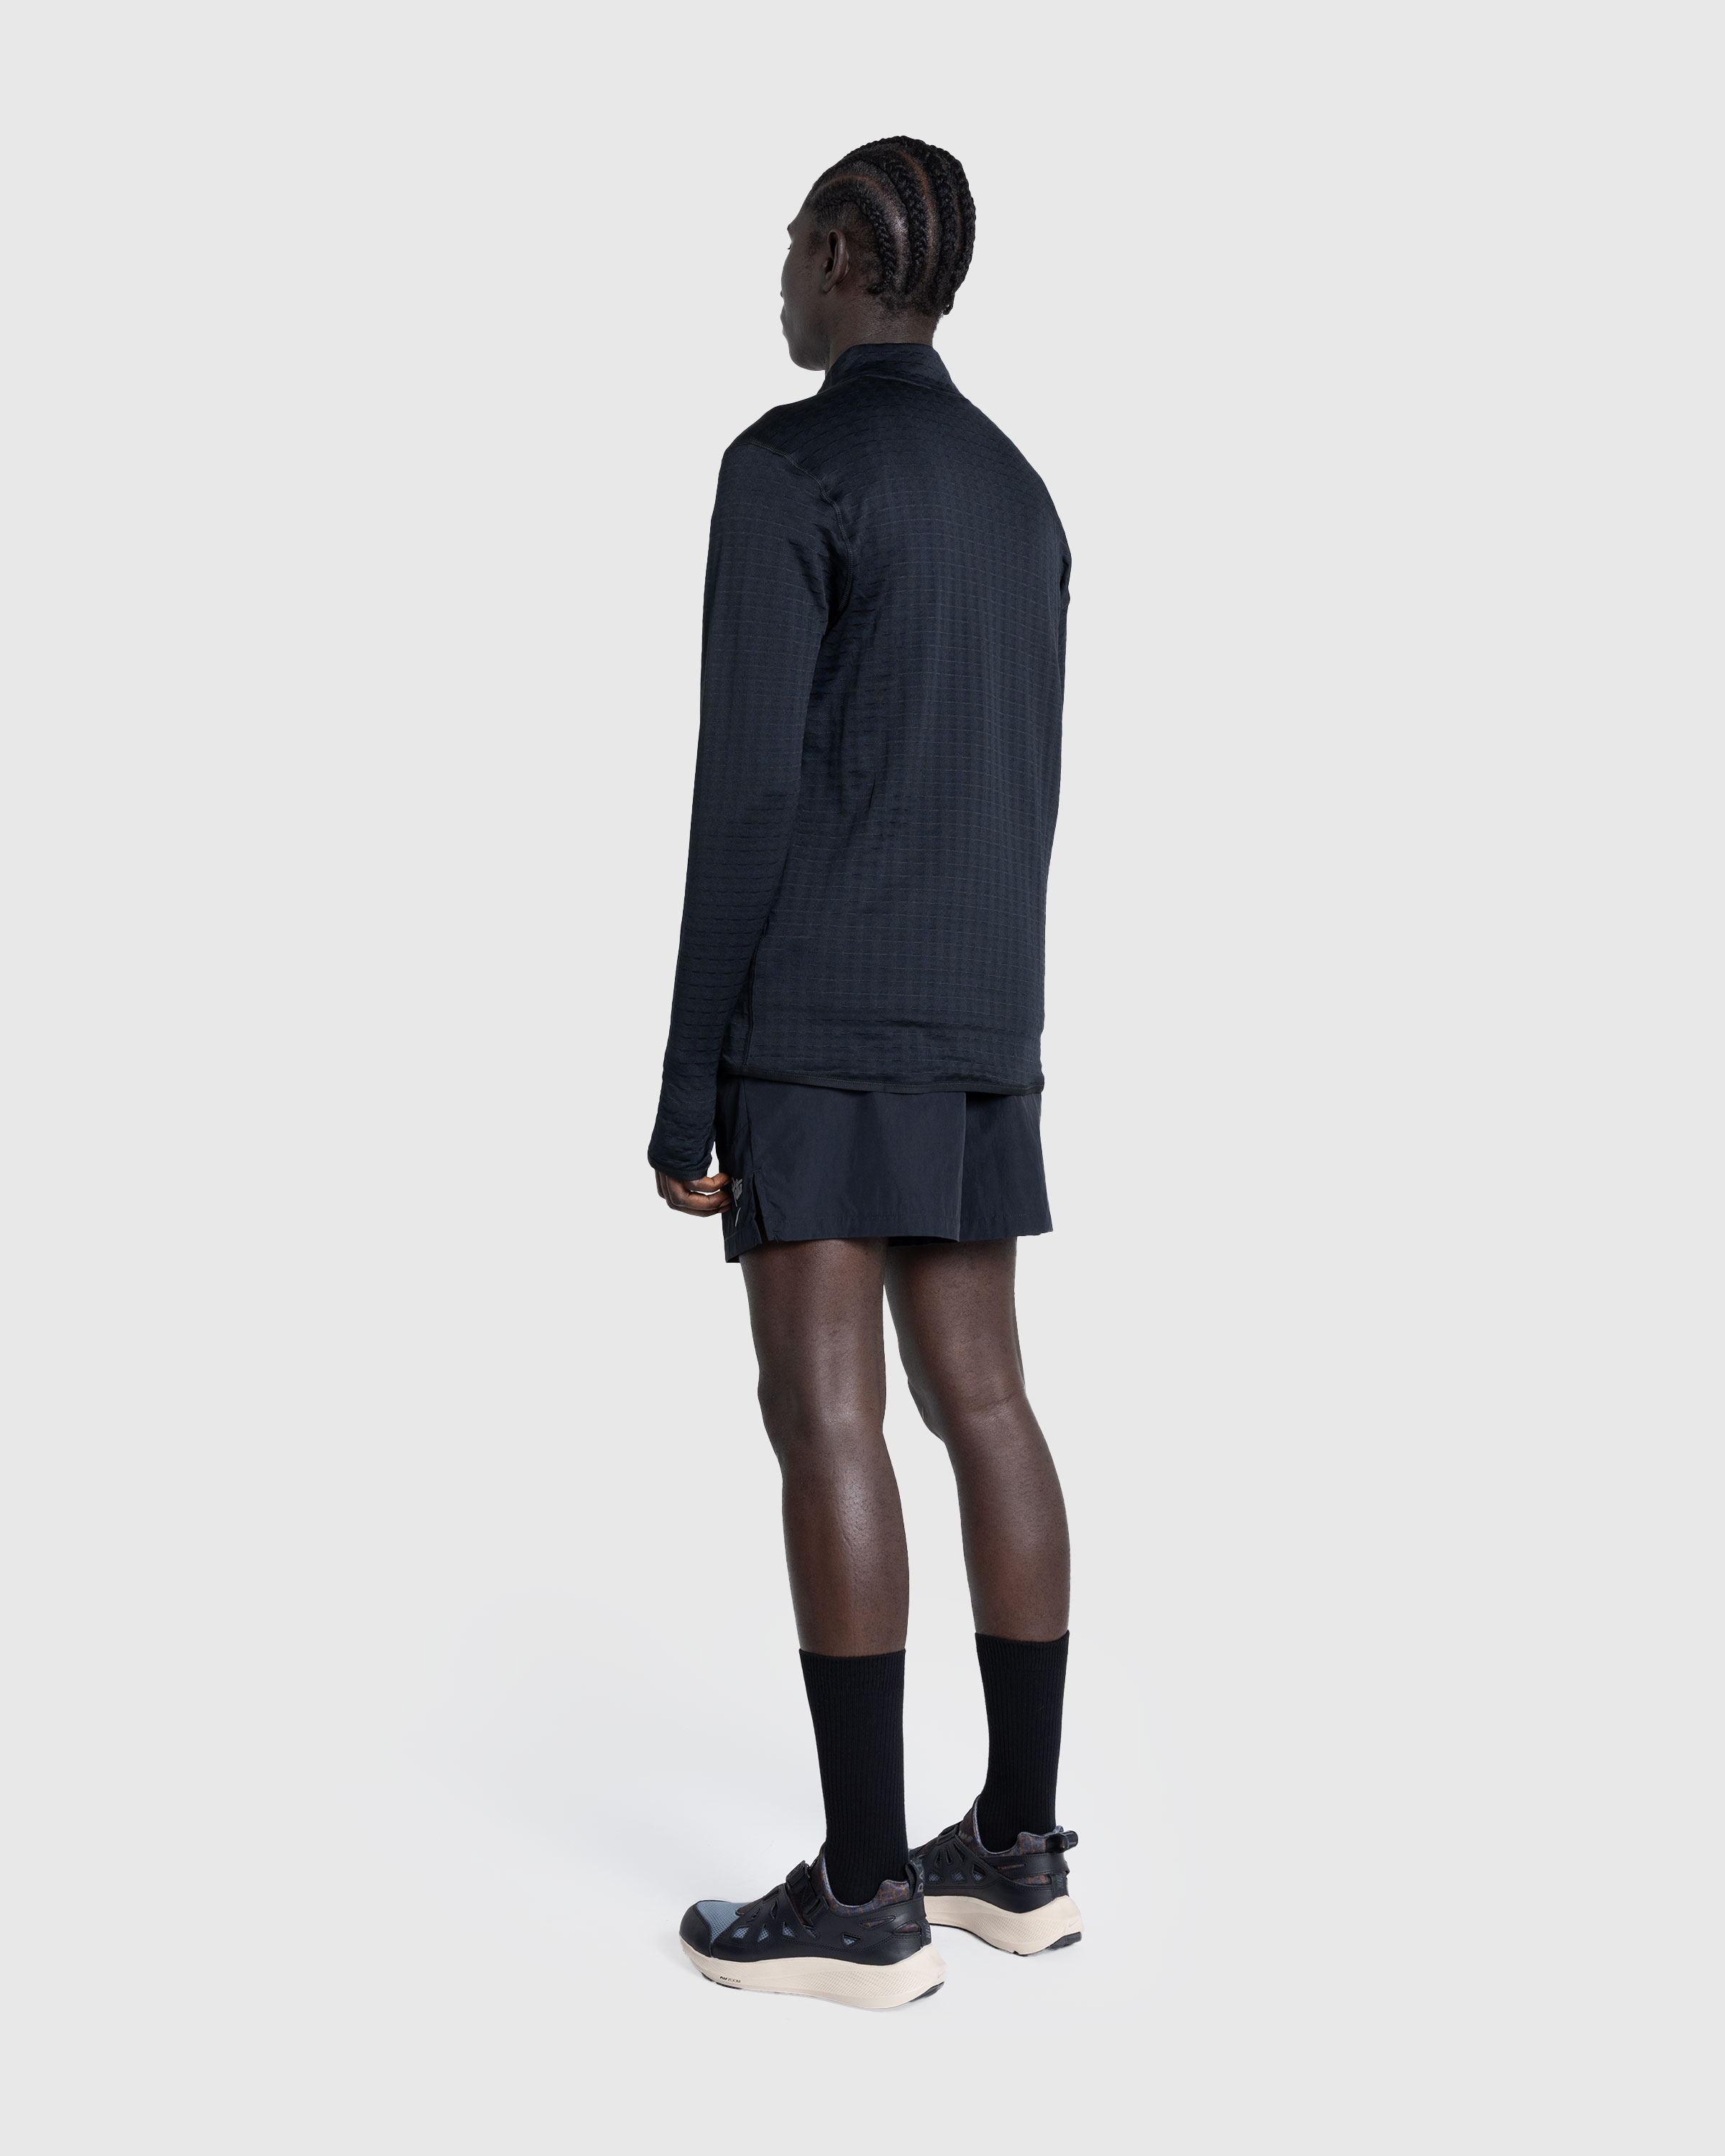 Nike x Patta – Men's Shorts Black - Active Shorts - Black - Image 4